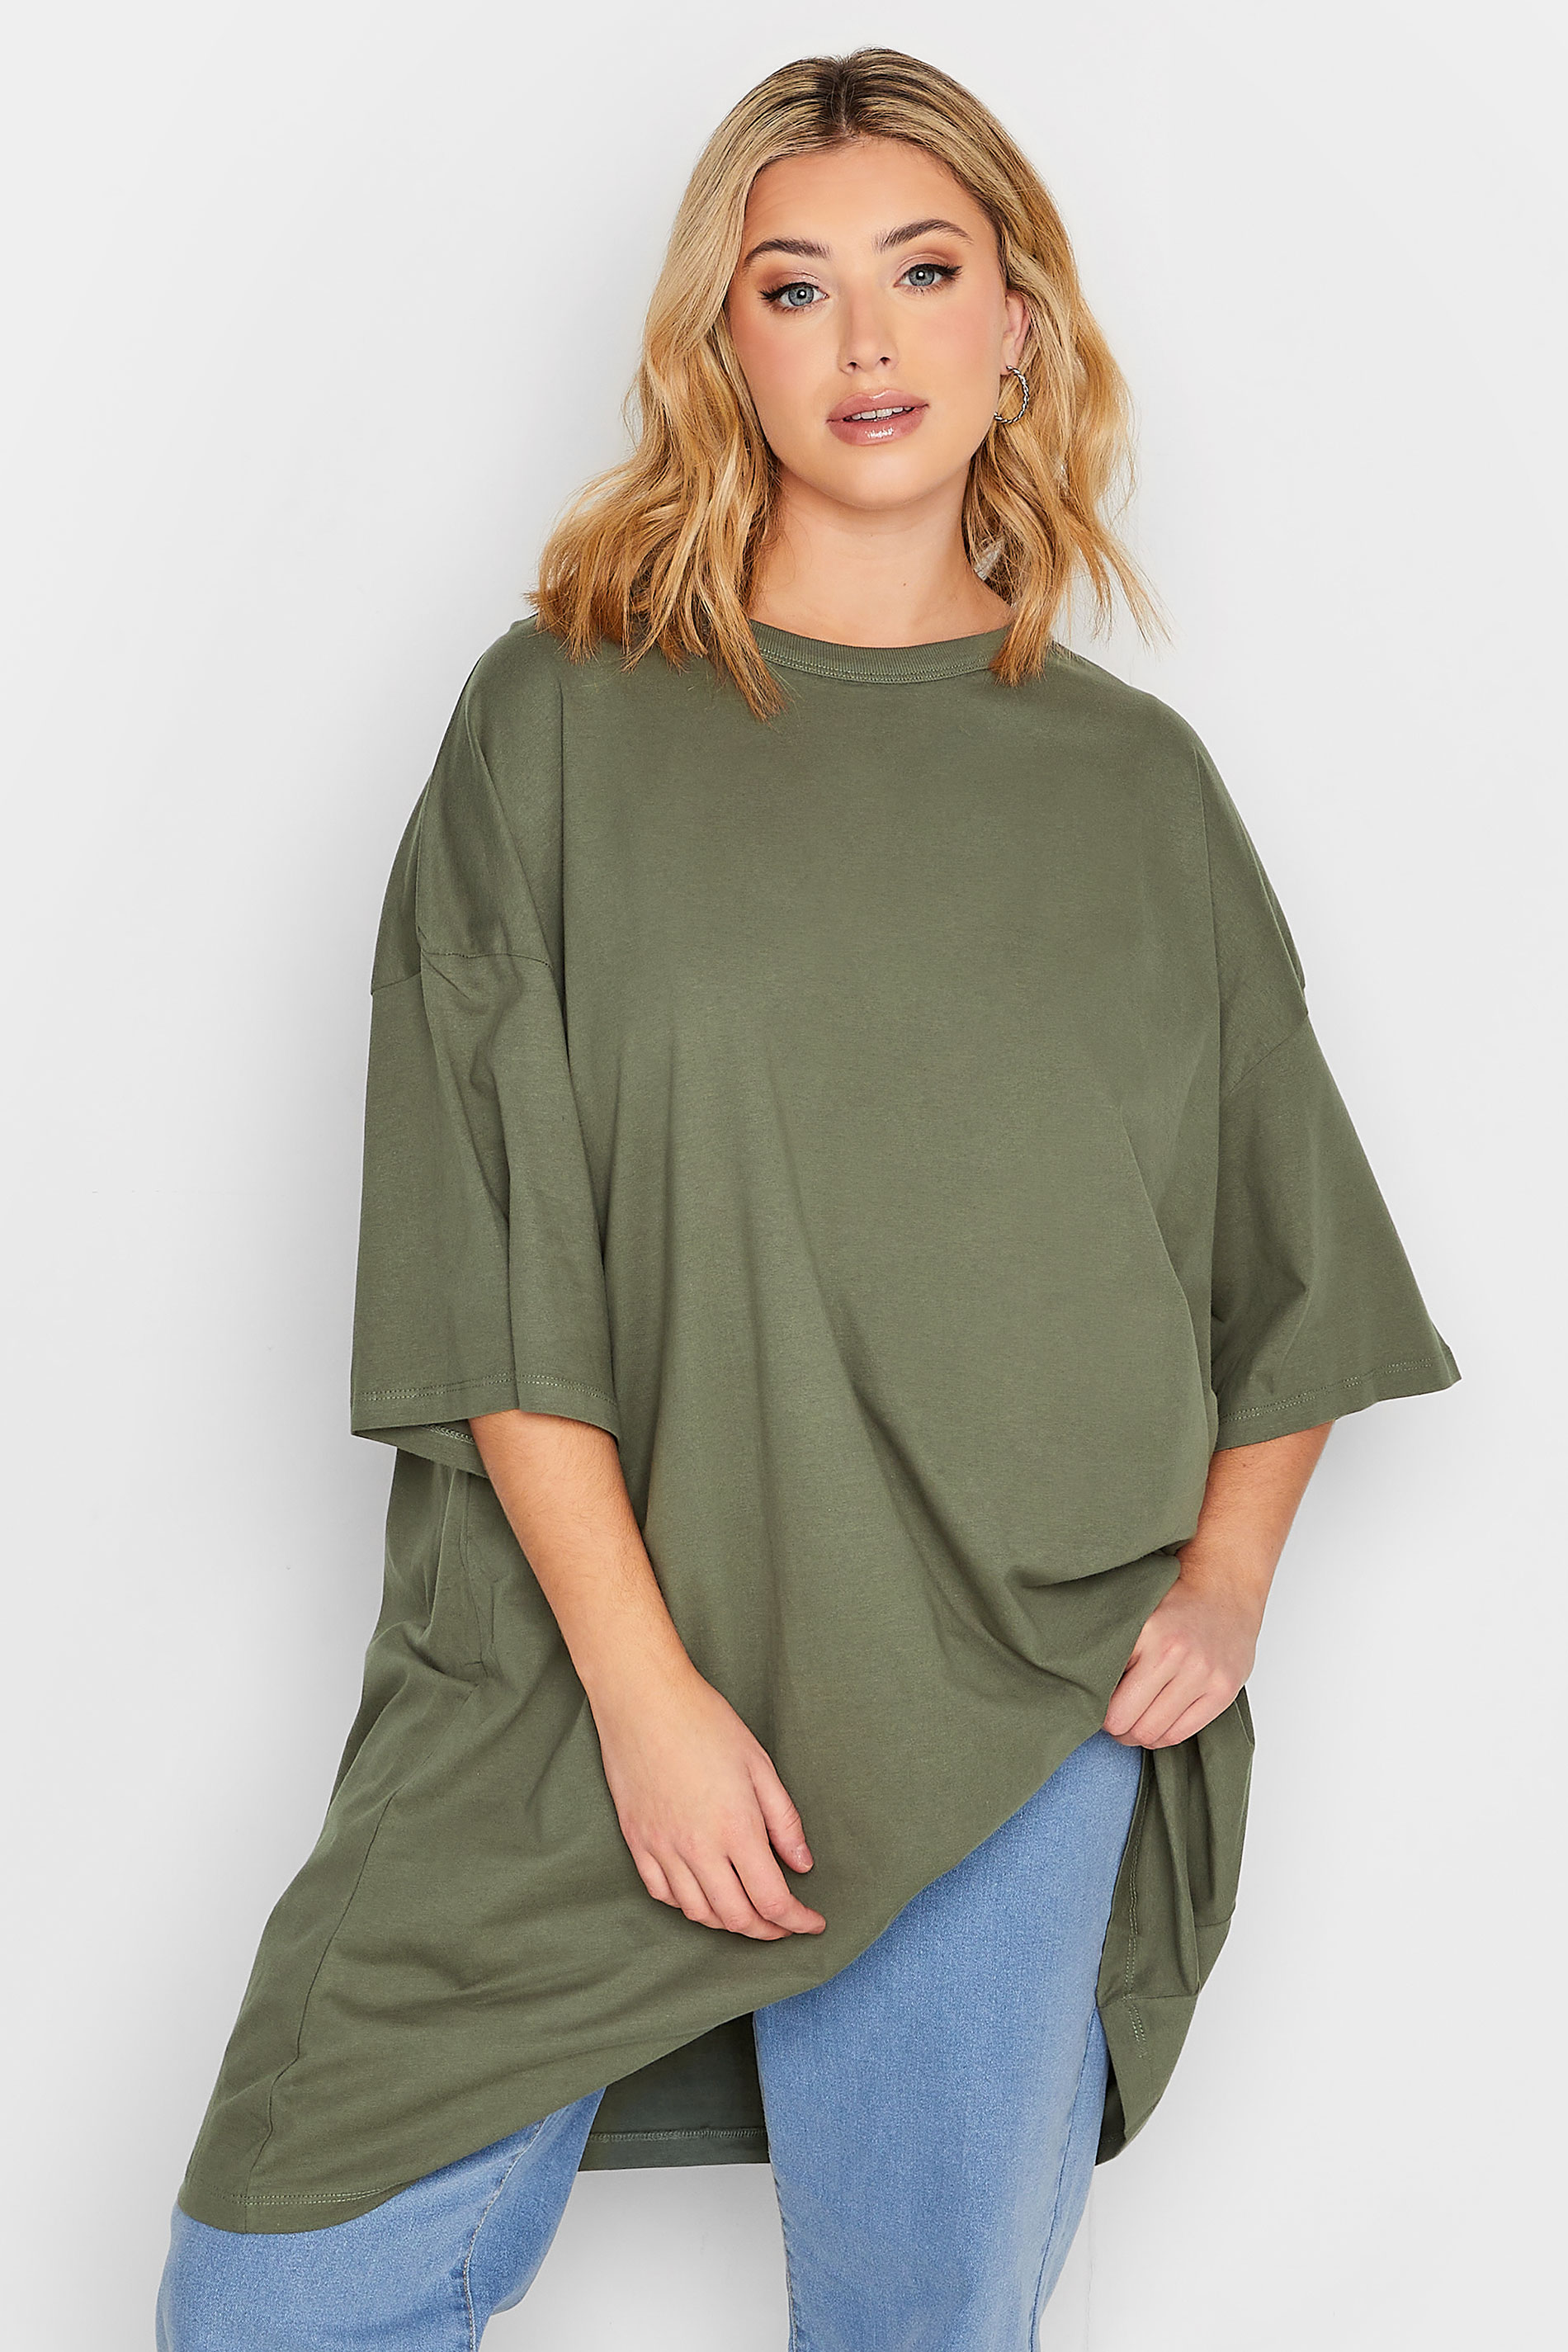 Plus-Size Khaki Green Oversized Tunic T-Shirt | Yours Clothing 1